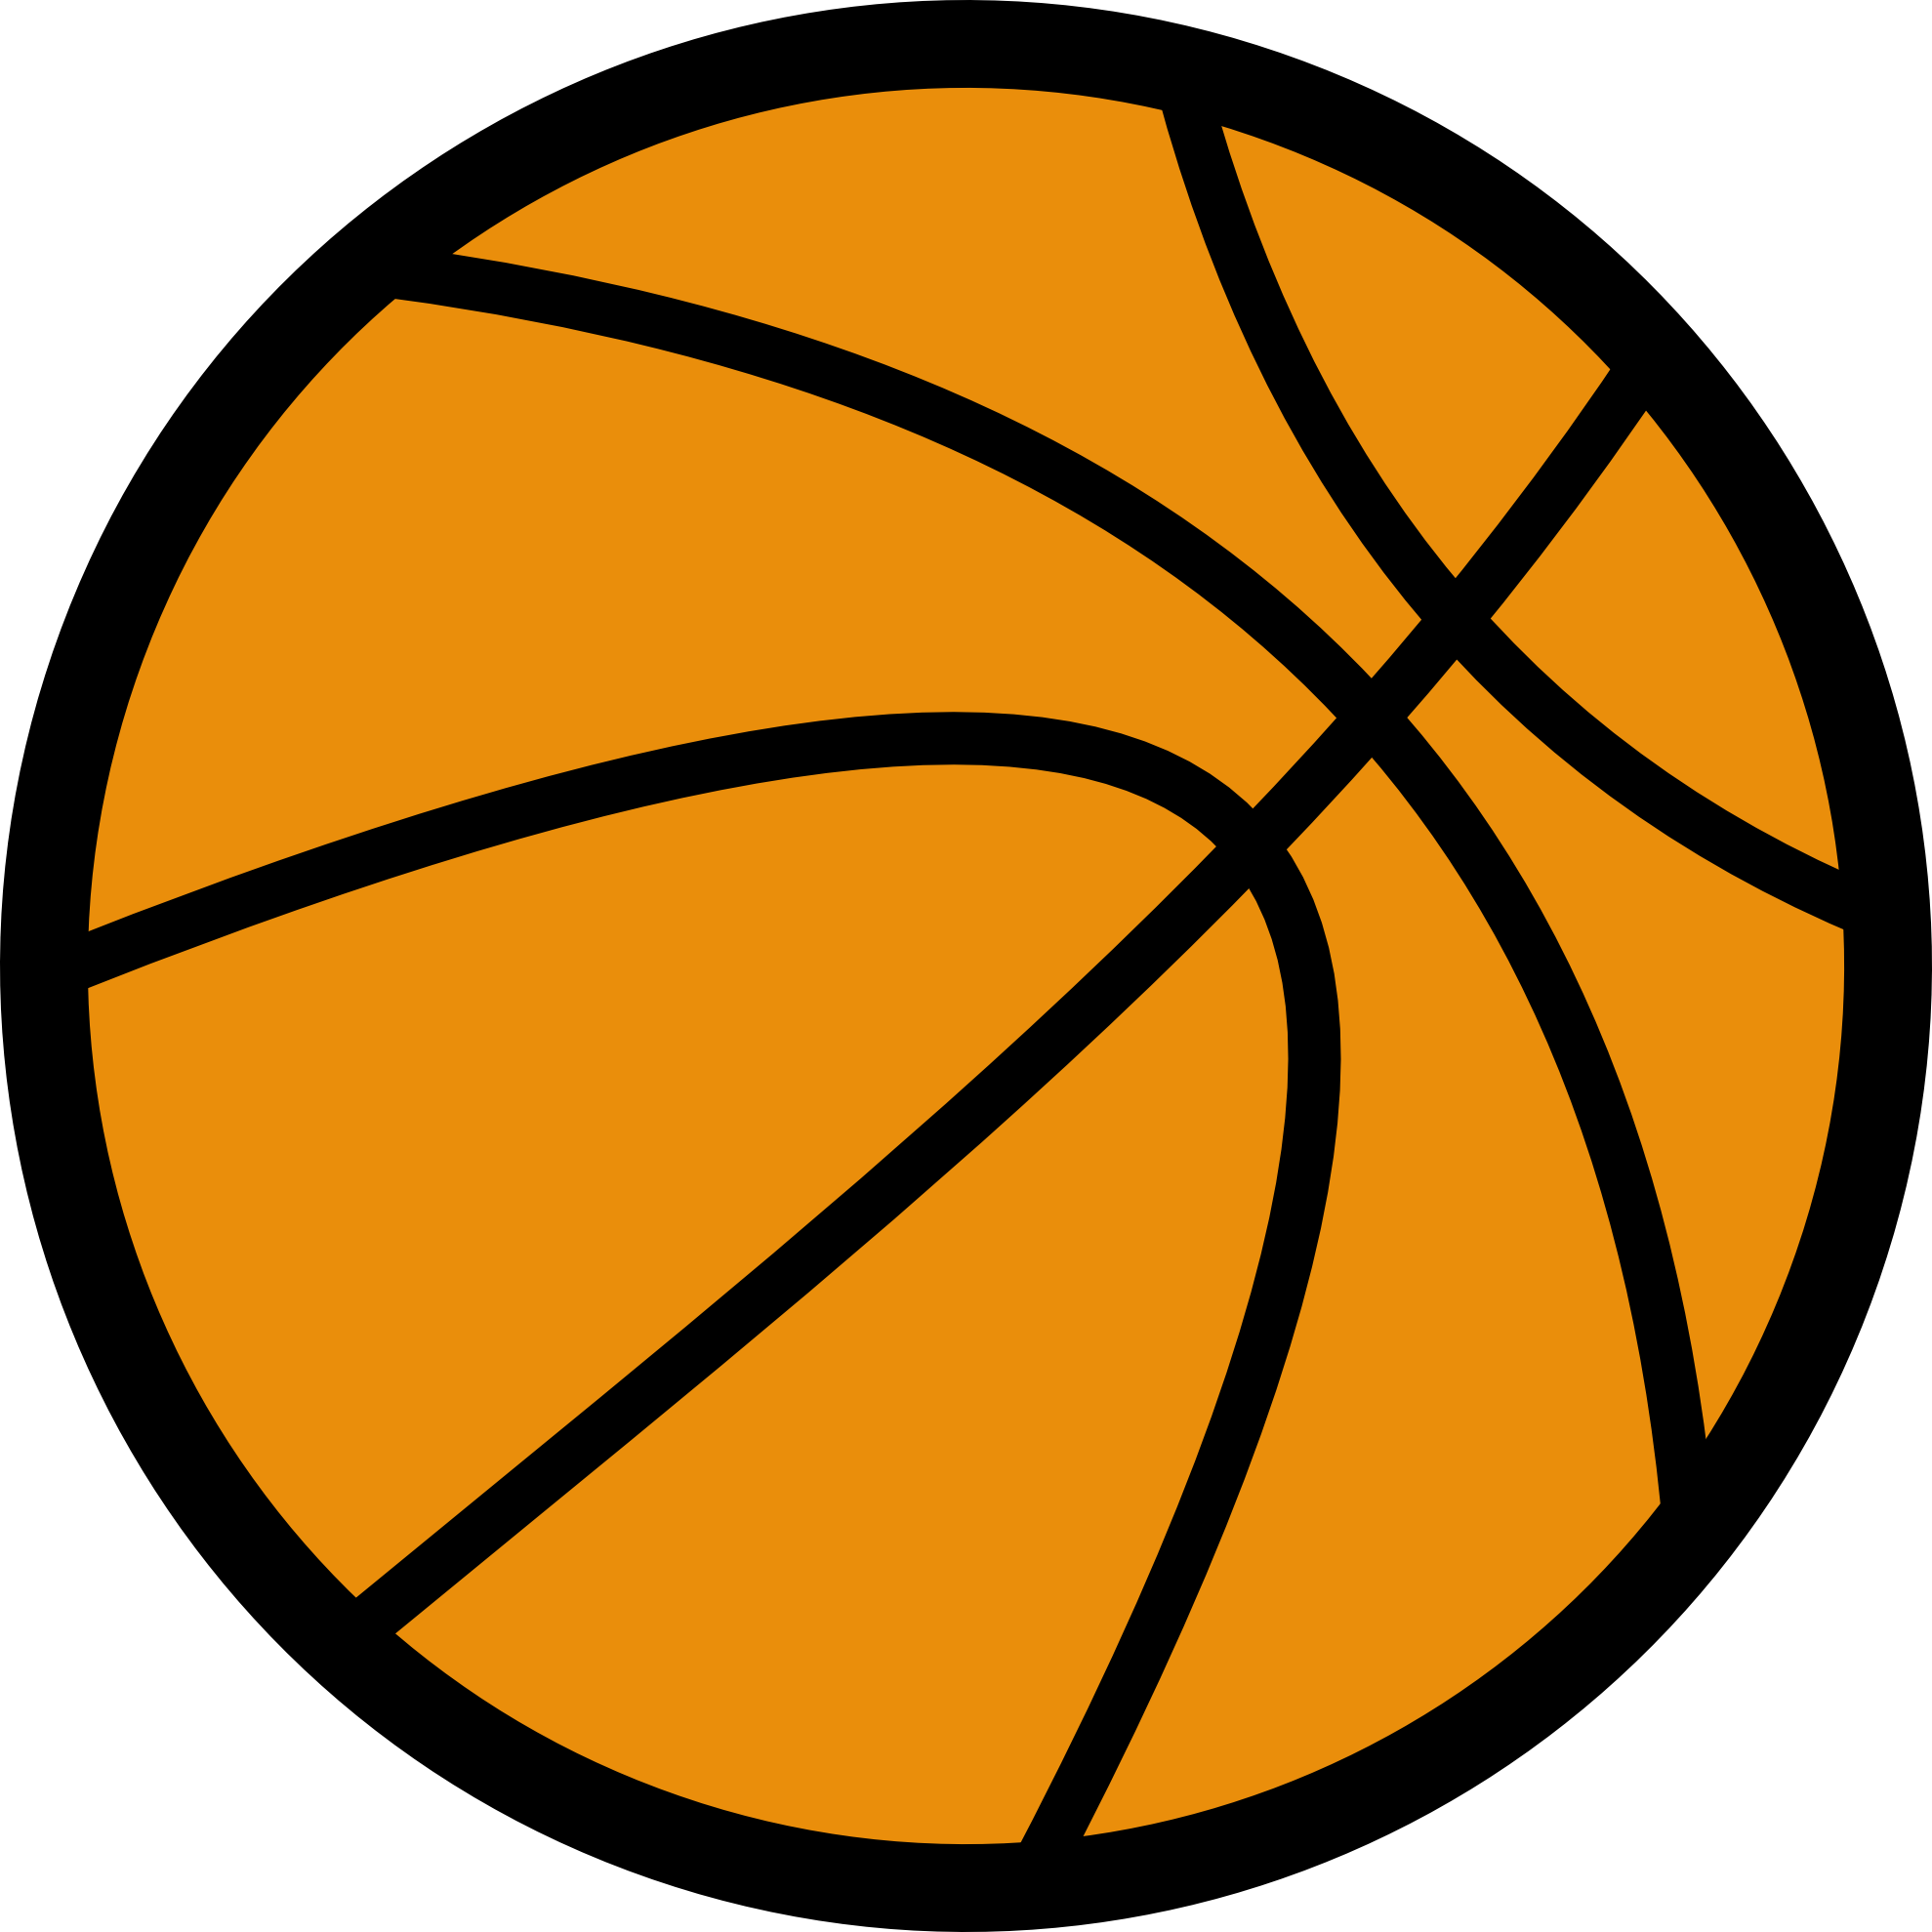 Basketball logo clipart